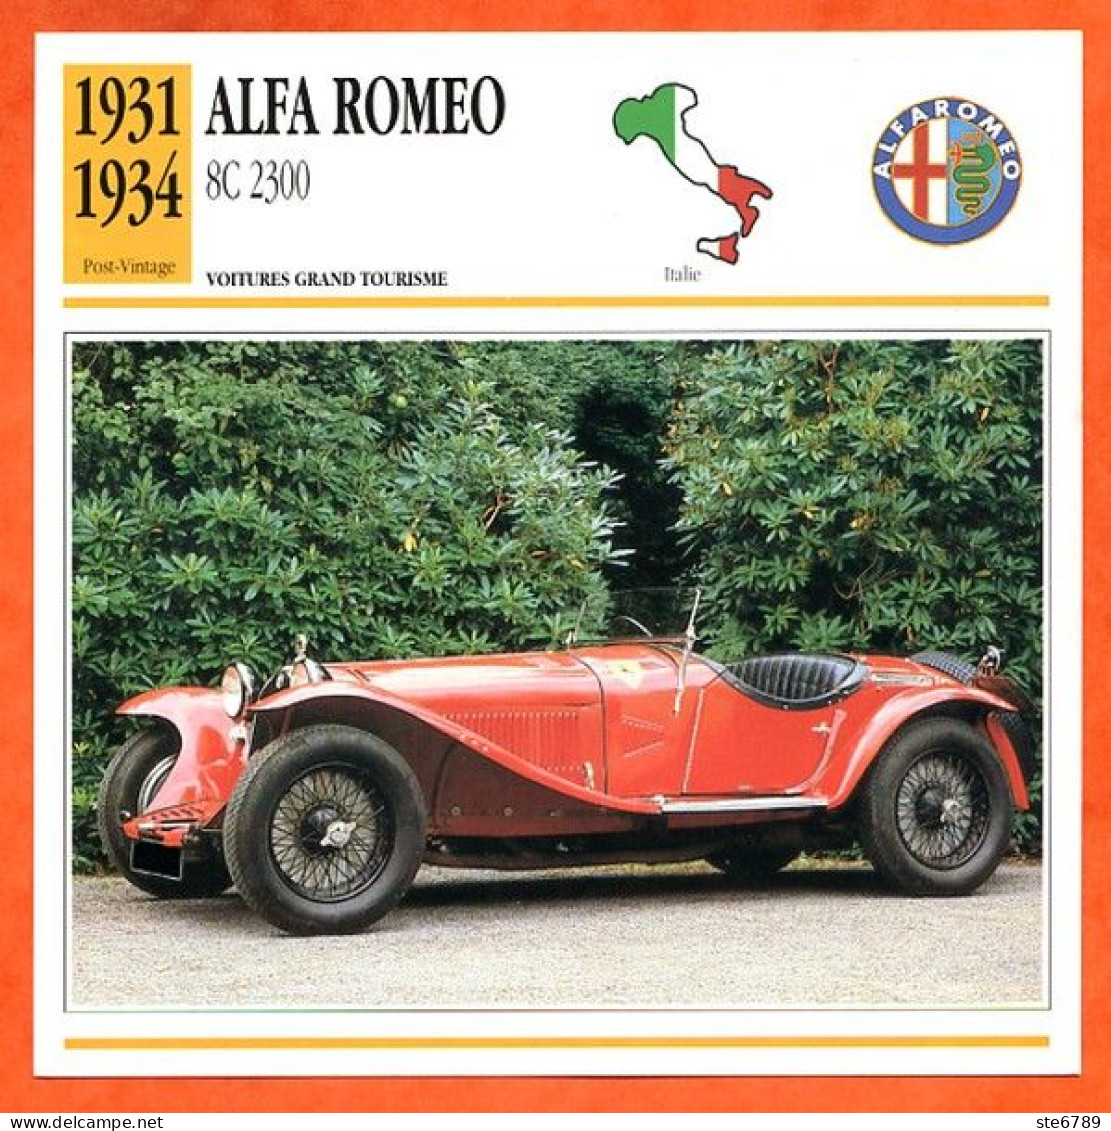 ALFA ROMEO 8C 2300 1931 Voiture Grand Tourisme Italie Fiche Technique Automobile - Automobili